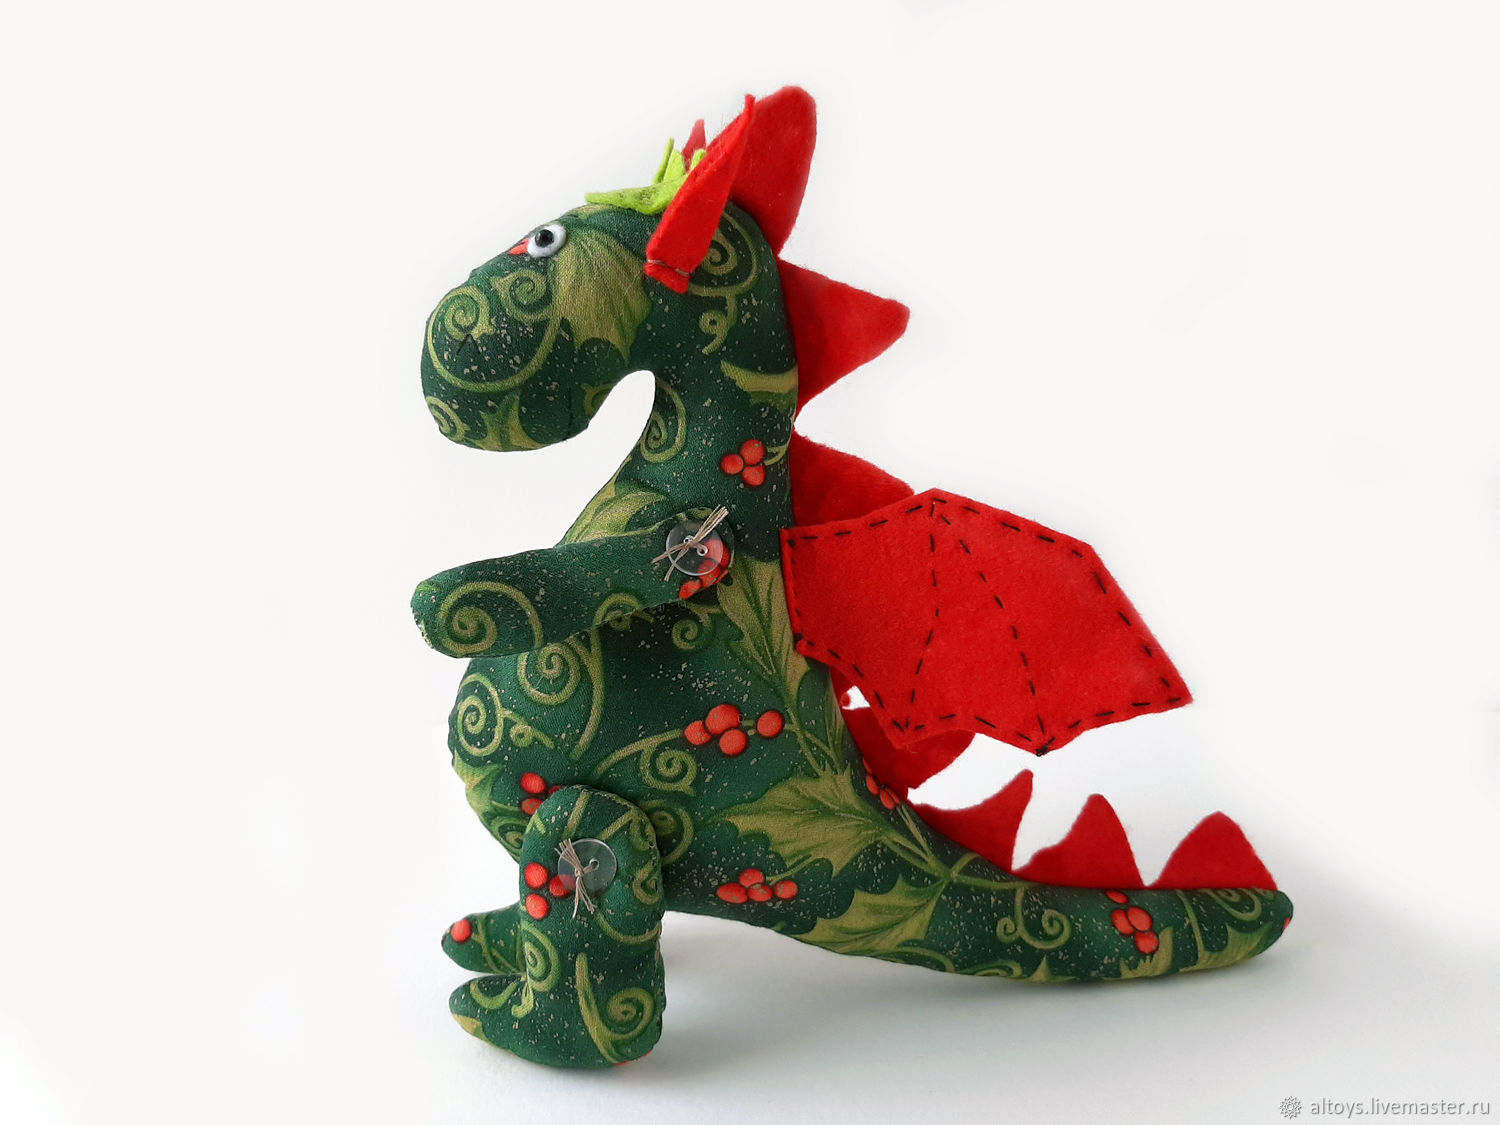 Выкройка Дракона - Выкройка игрушки своими руками из ткани простая